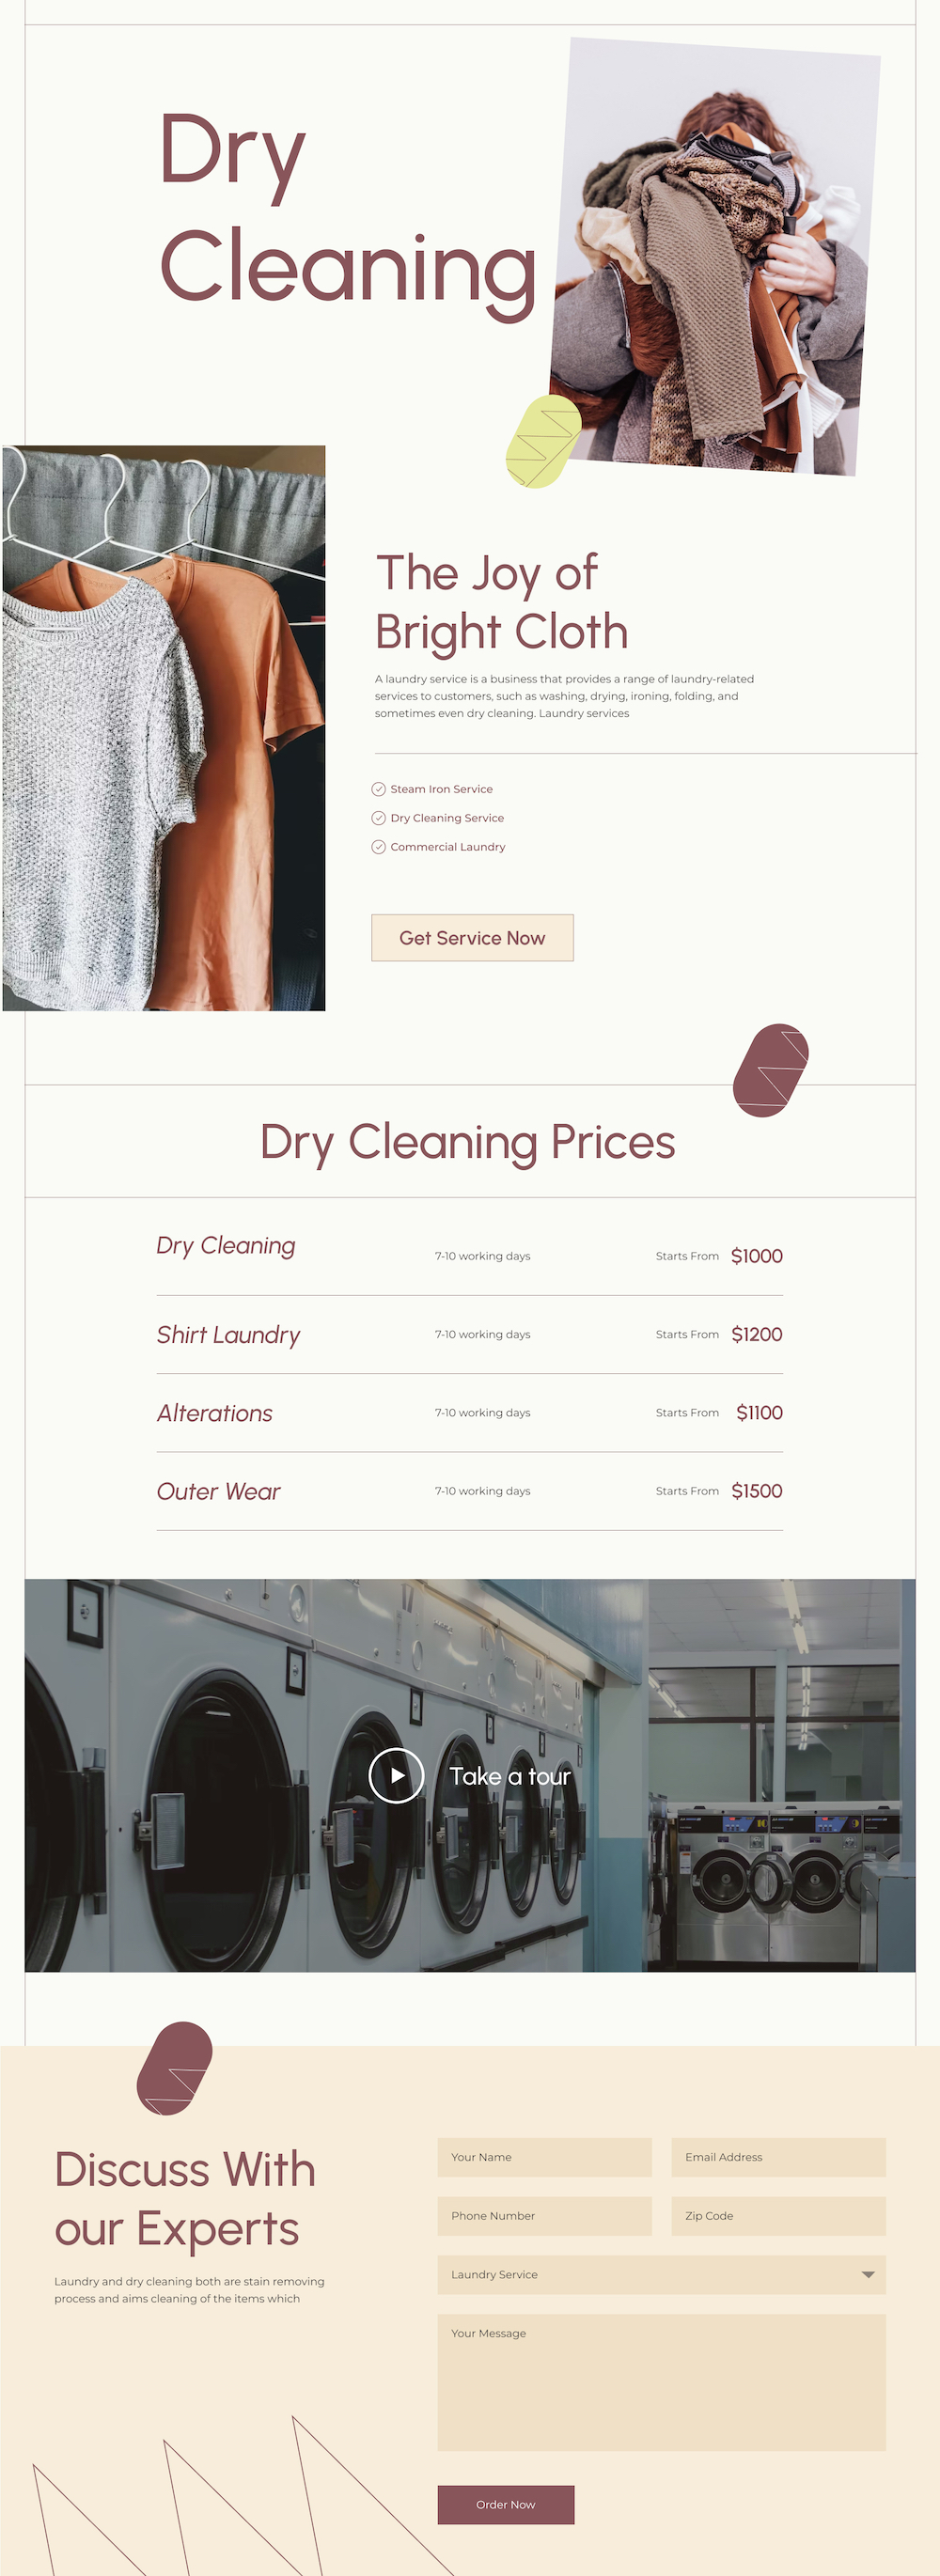 Laundromat Services Details